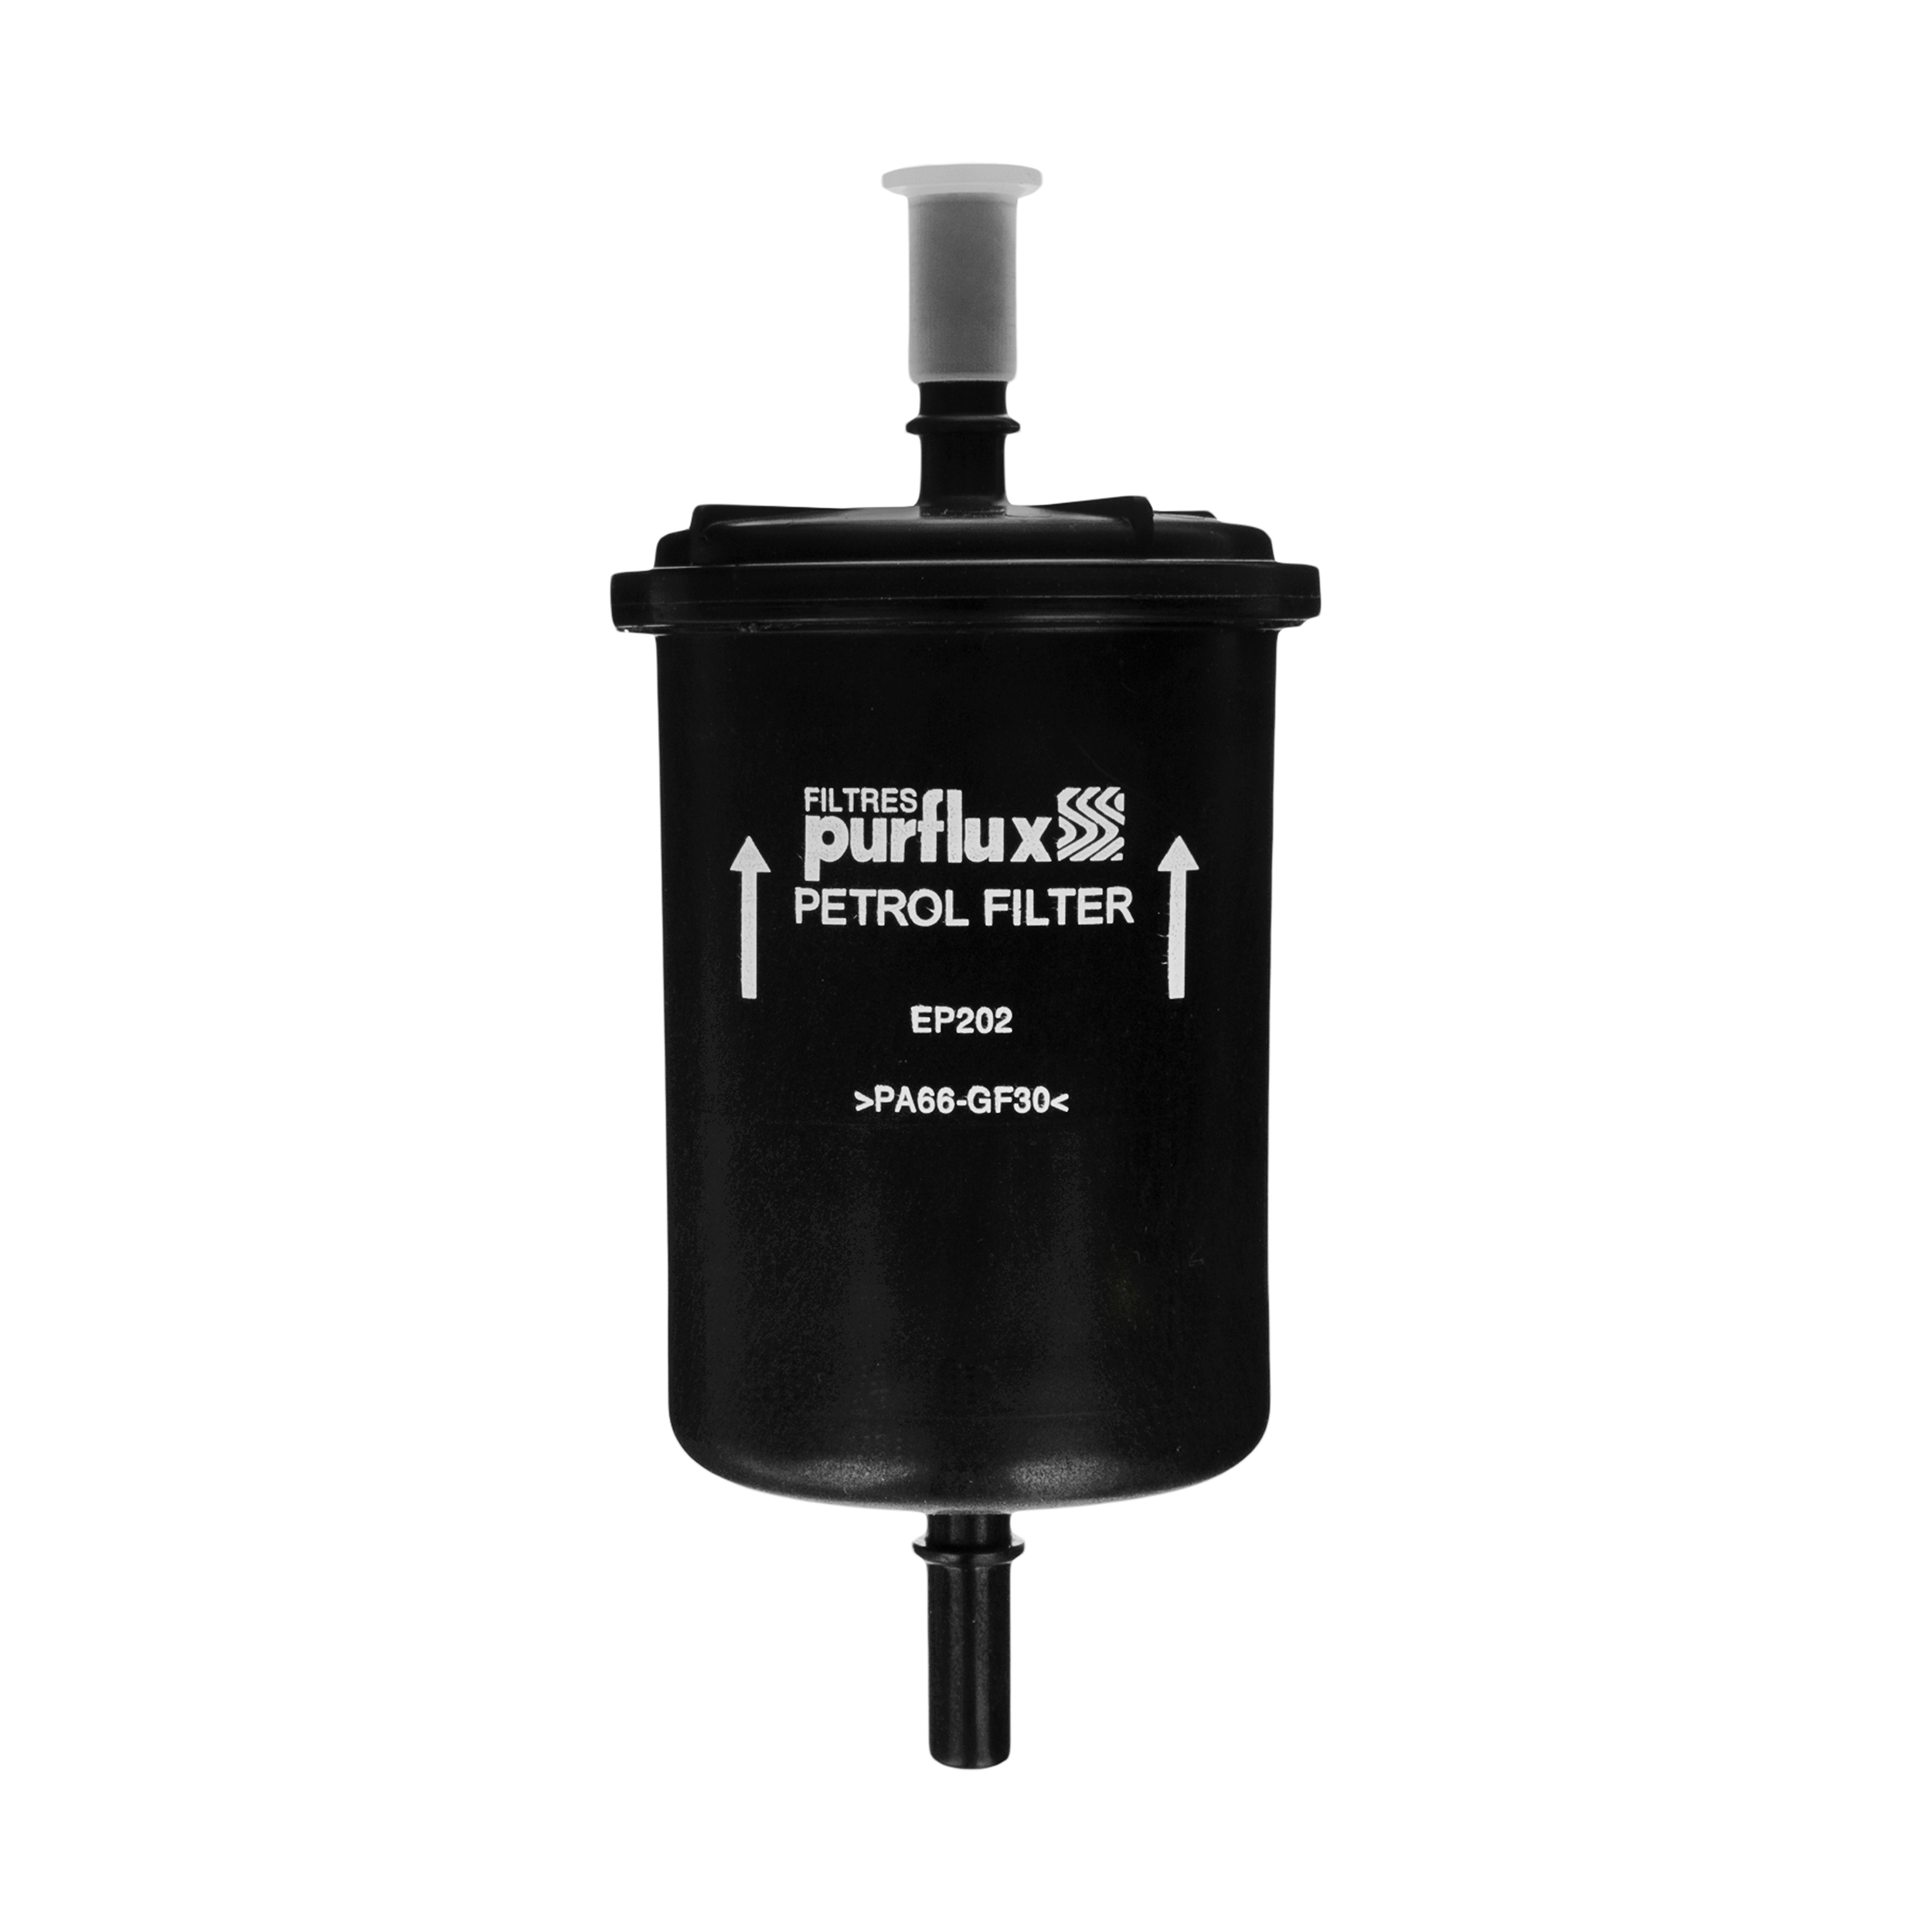 فيلتر بنزين پرفلاکس مدل EP202 مناسب برای زانتیا